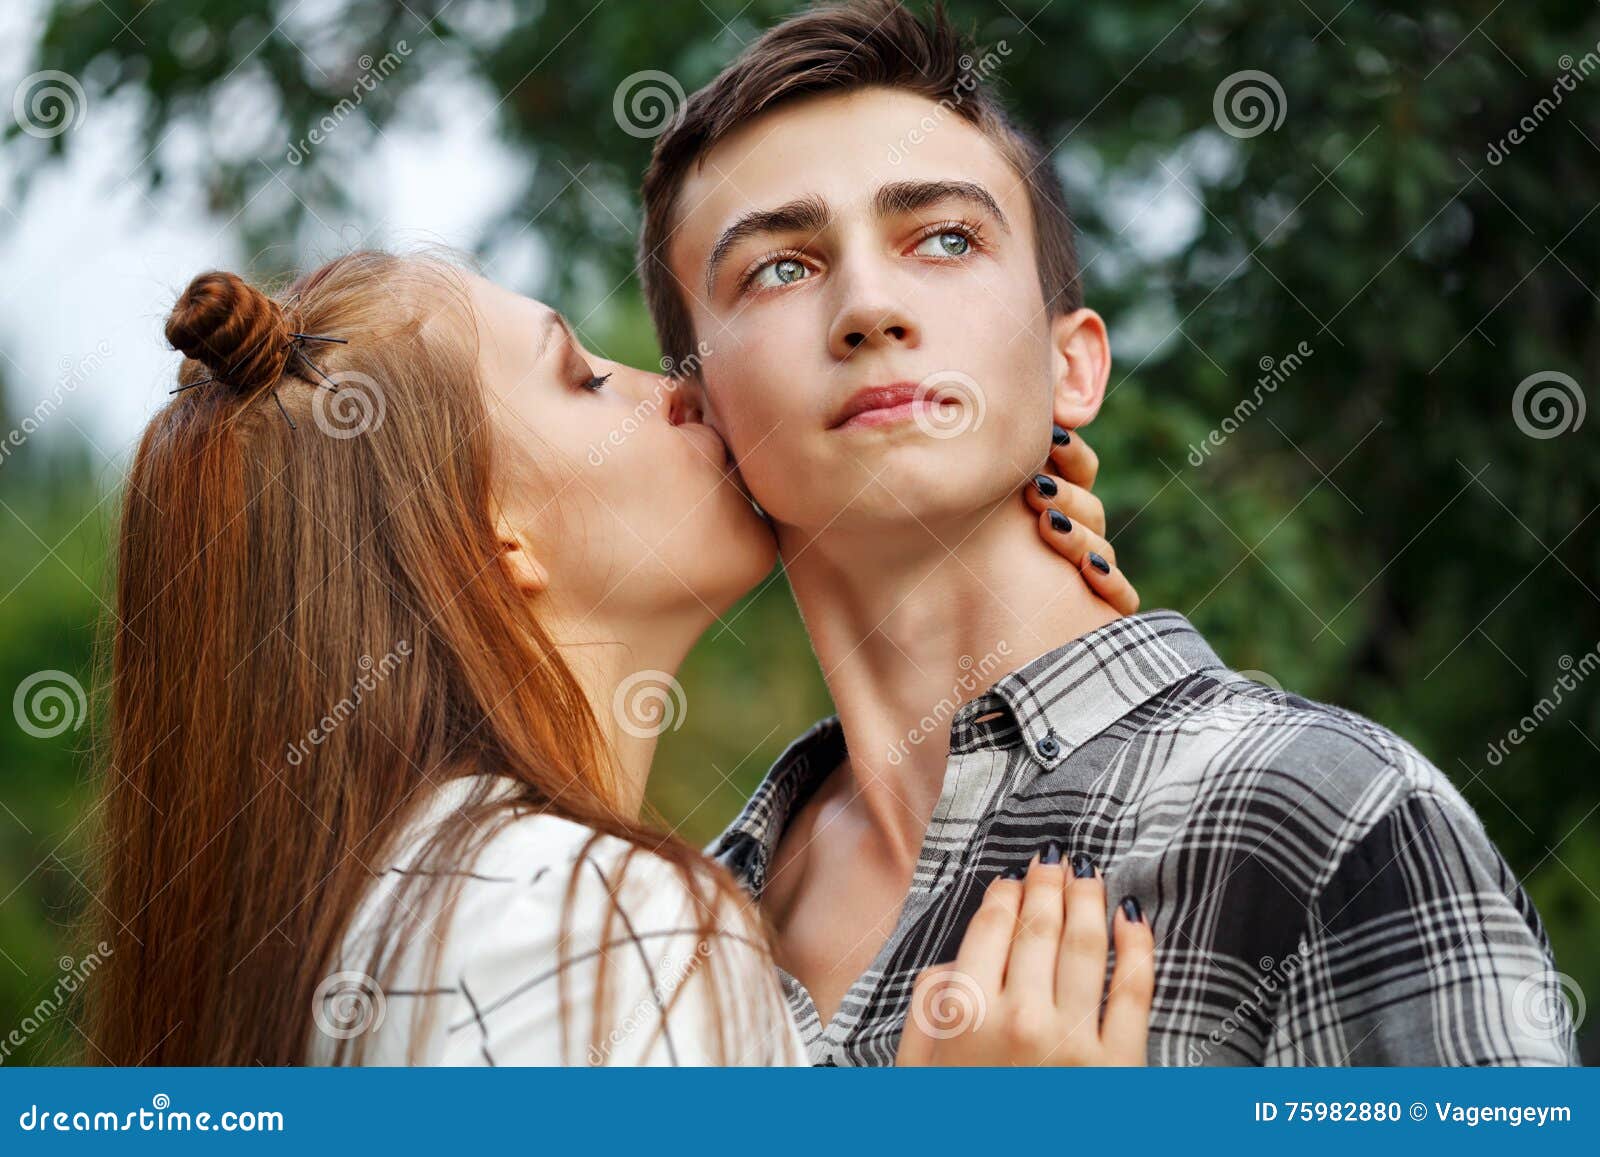 Naked Teen Girls Kissing Guys